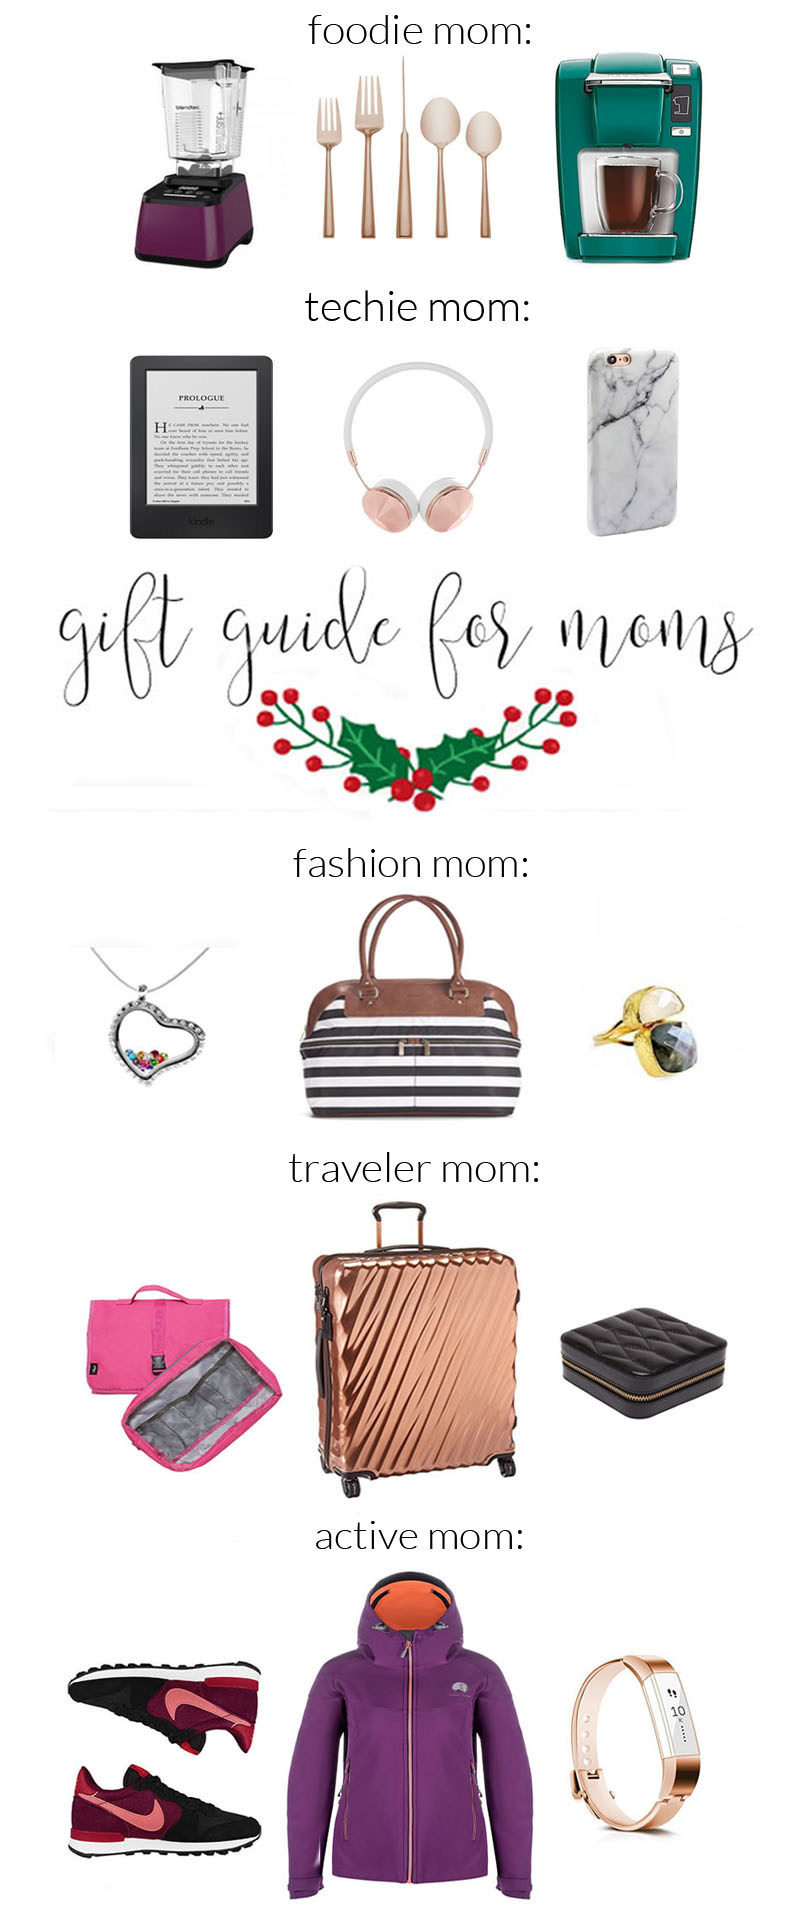 Gift Guide for Mom